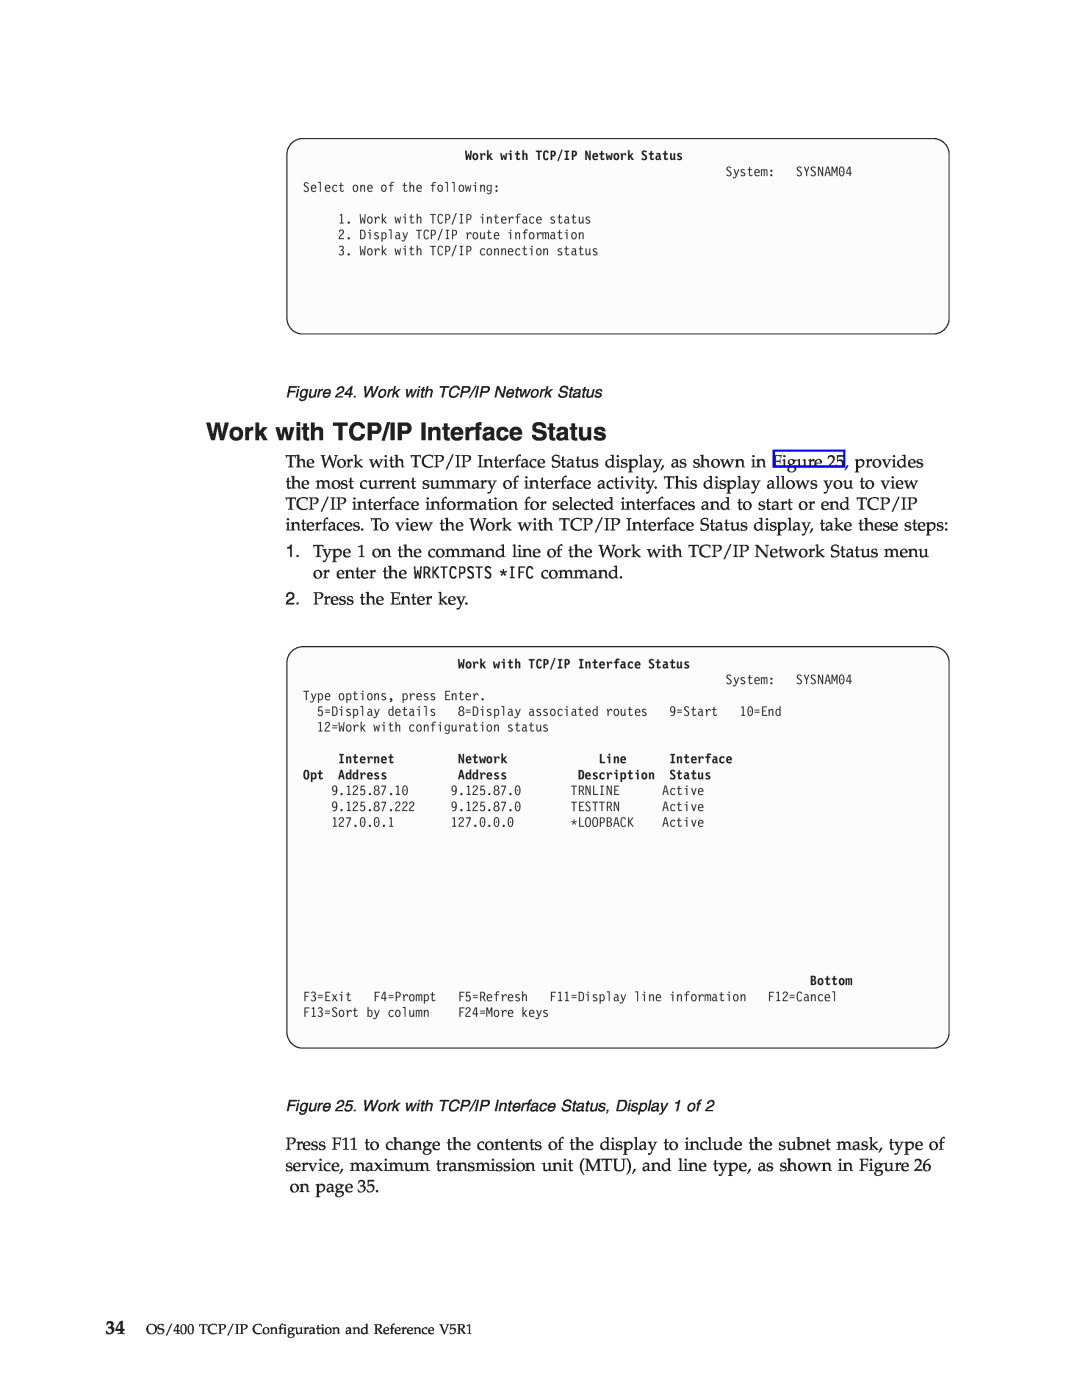 IBM SC41-5420-04 manual Work with TCP/IP Interface Status 